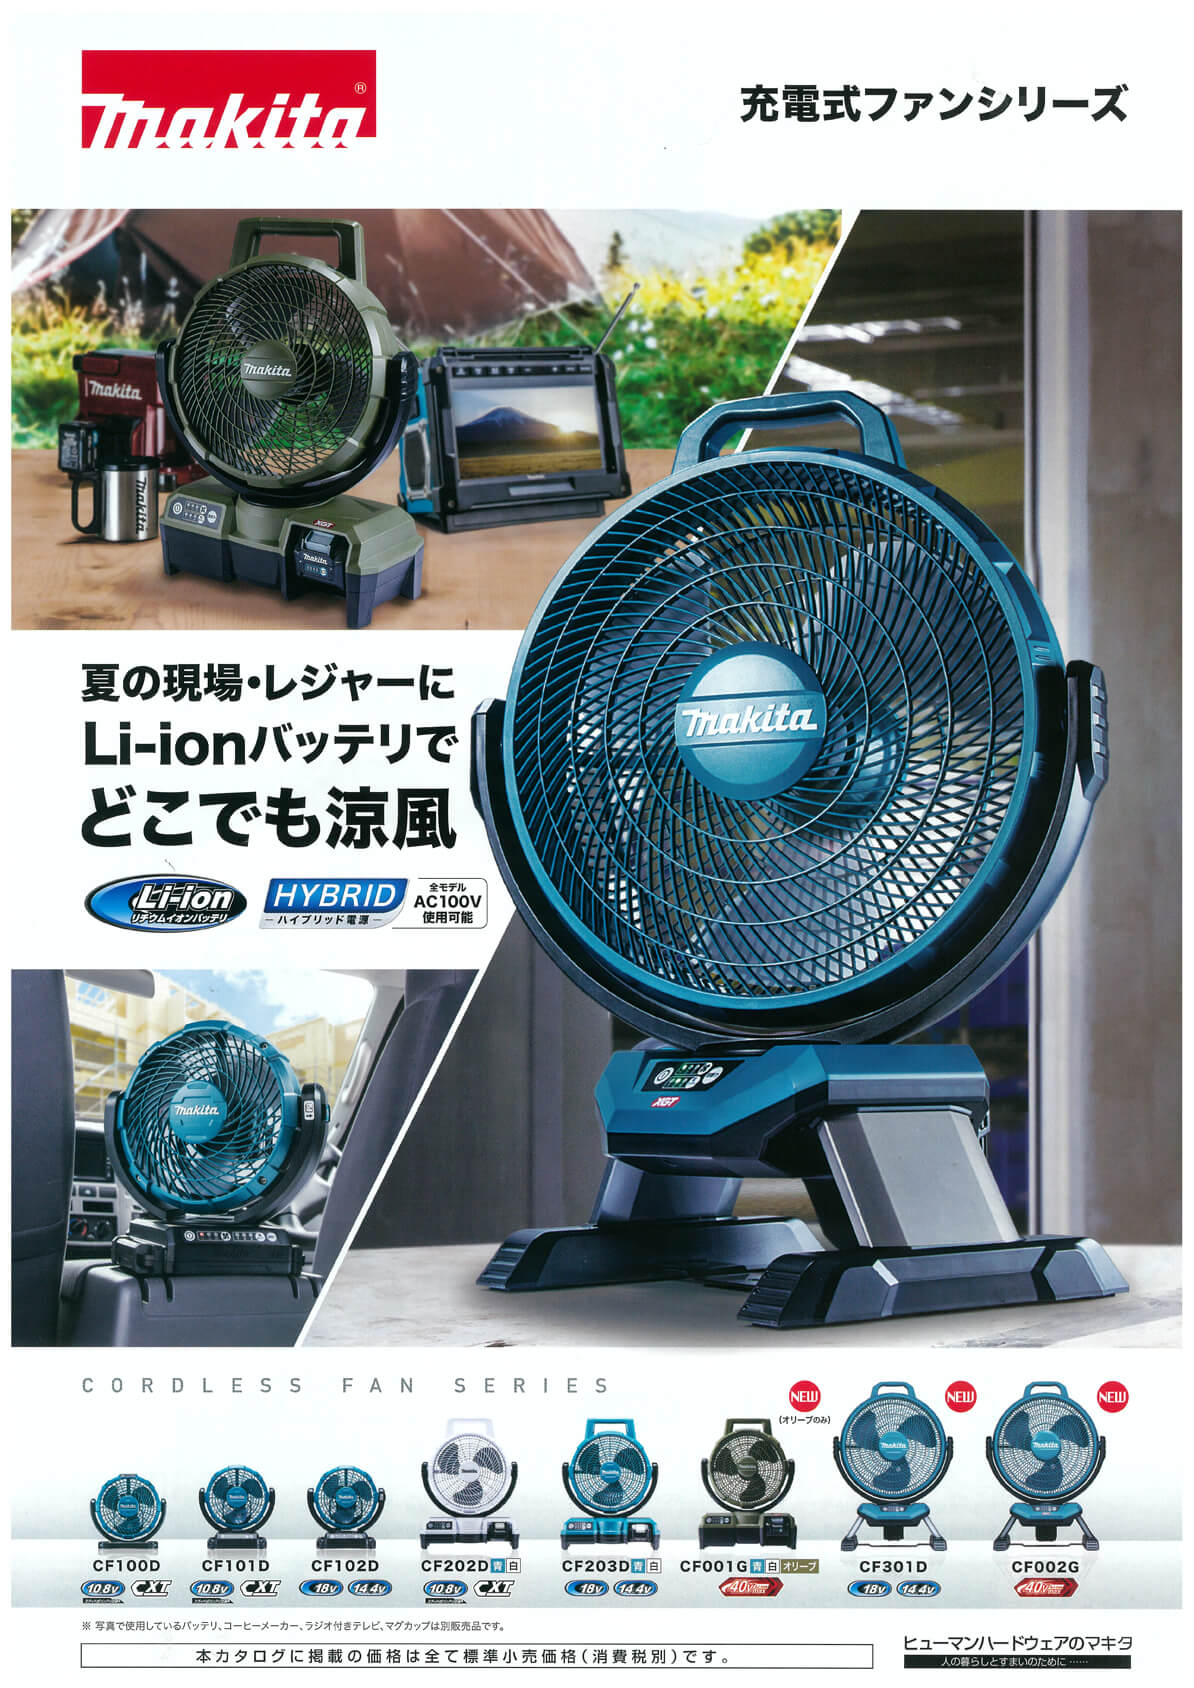 マキタ CF002GZ 40Vmax充電式産業扇 ウエダ金物【公式サイト】